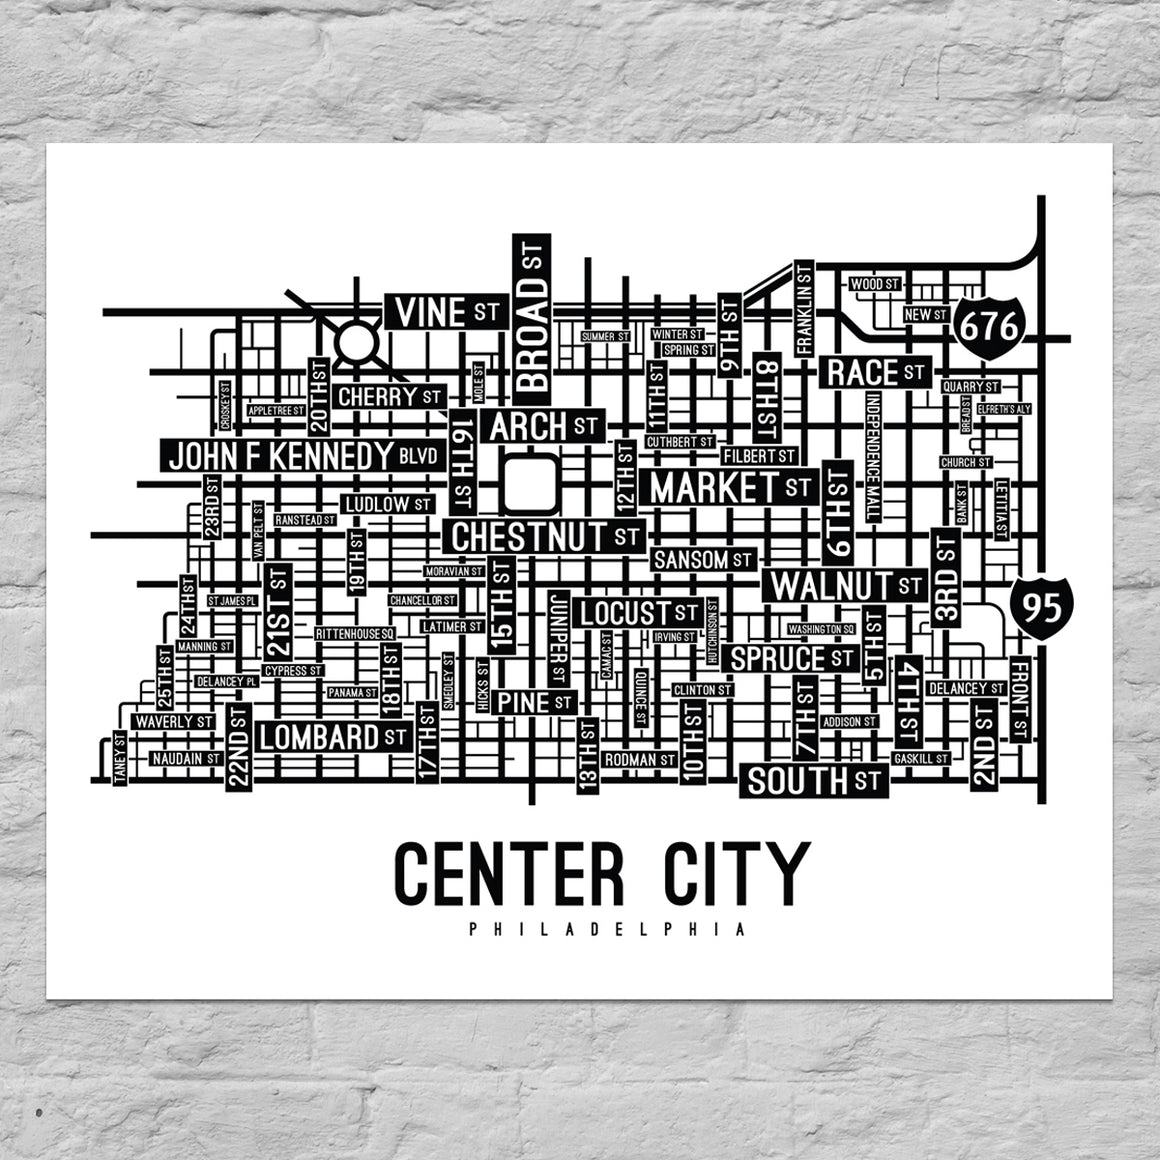 Center City, Philadelphia Street Map Poster